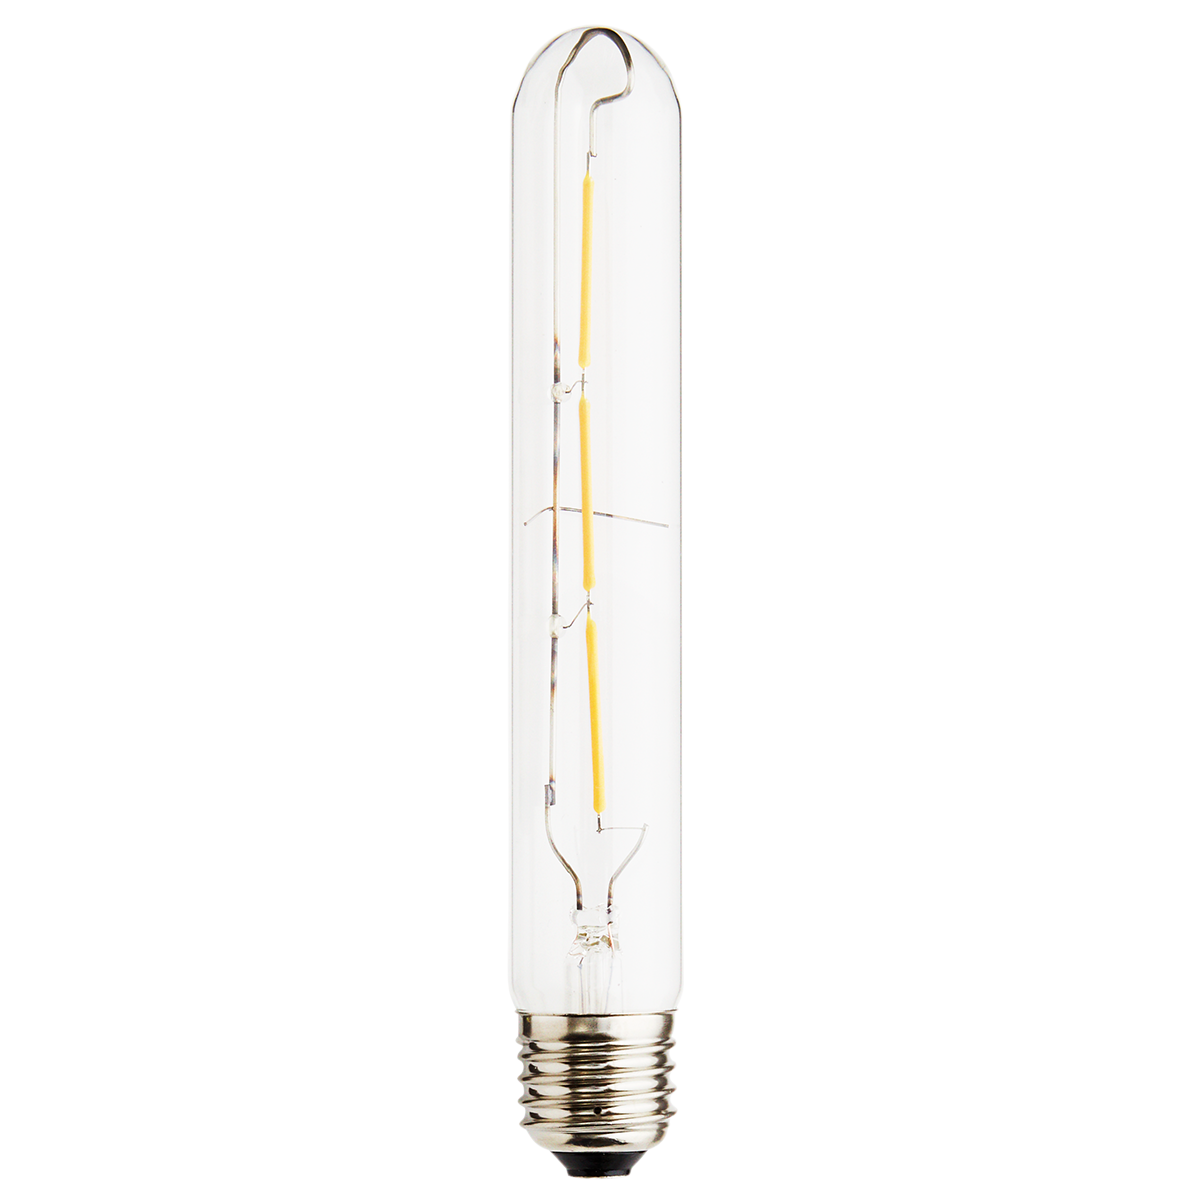 LED bulb, 3W, E27